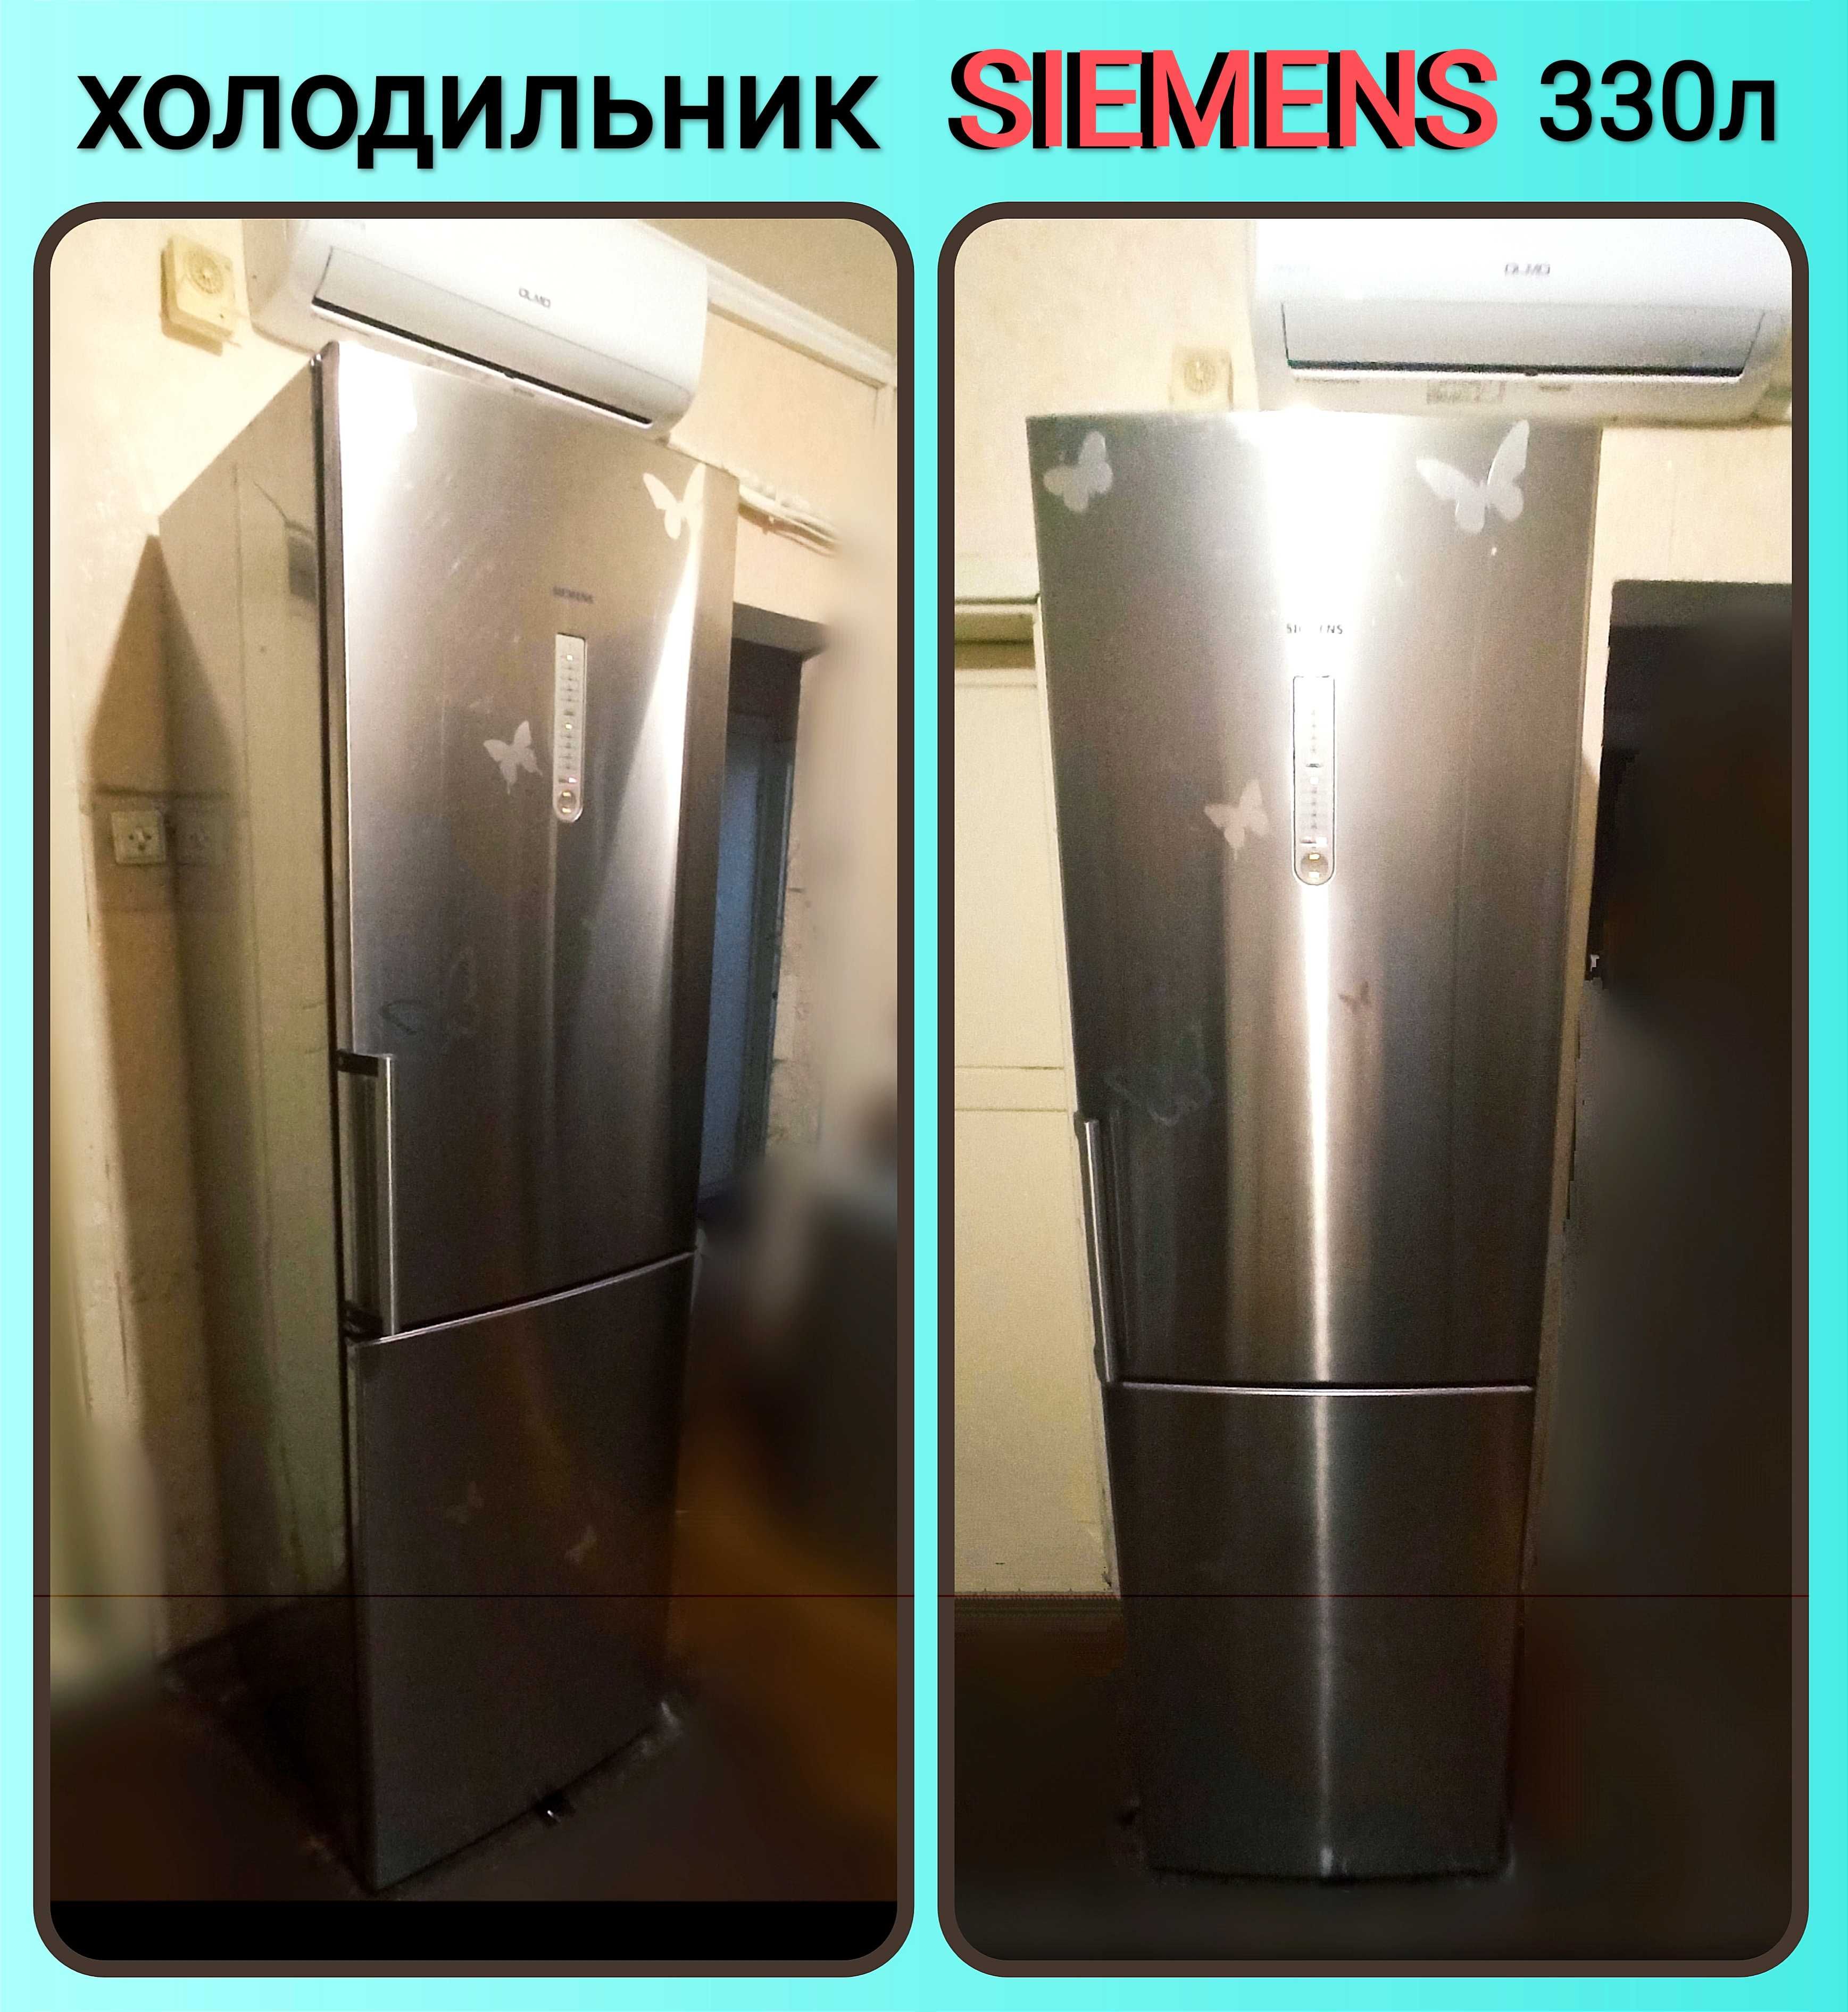 Якісний  двокамерний холодильник SIEMENS із Німеччини